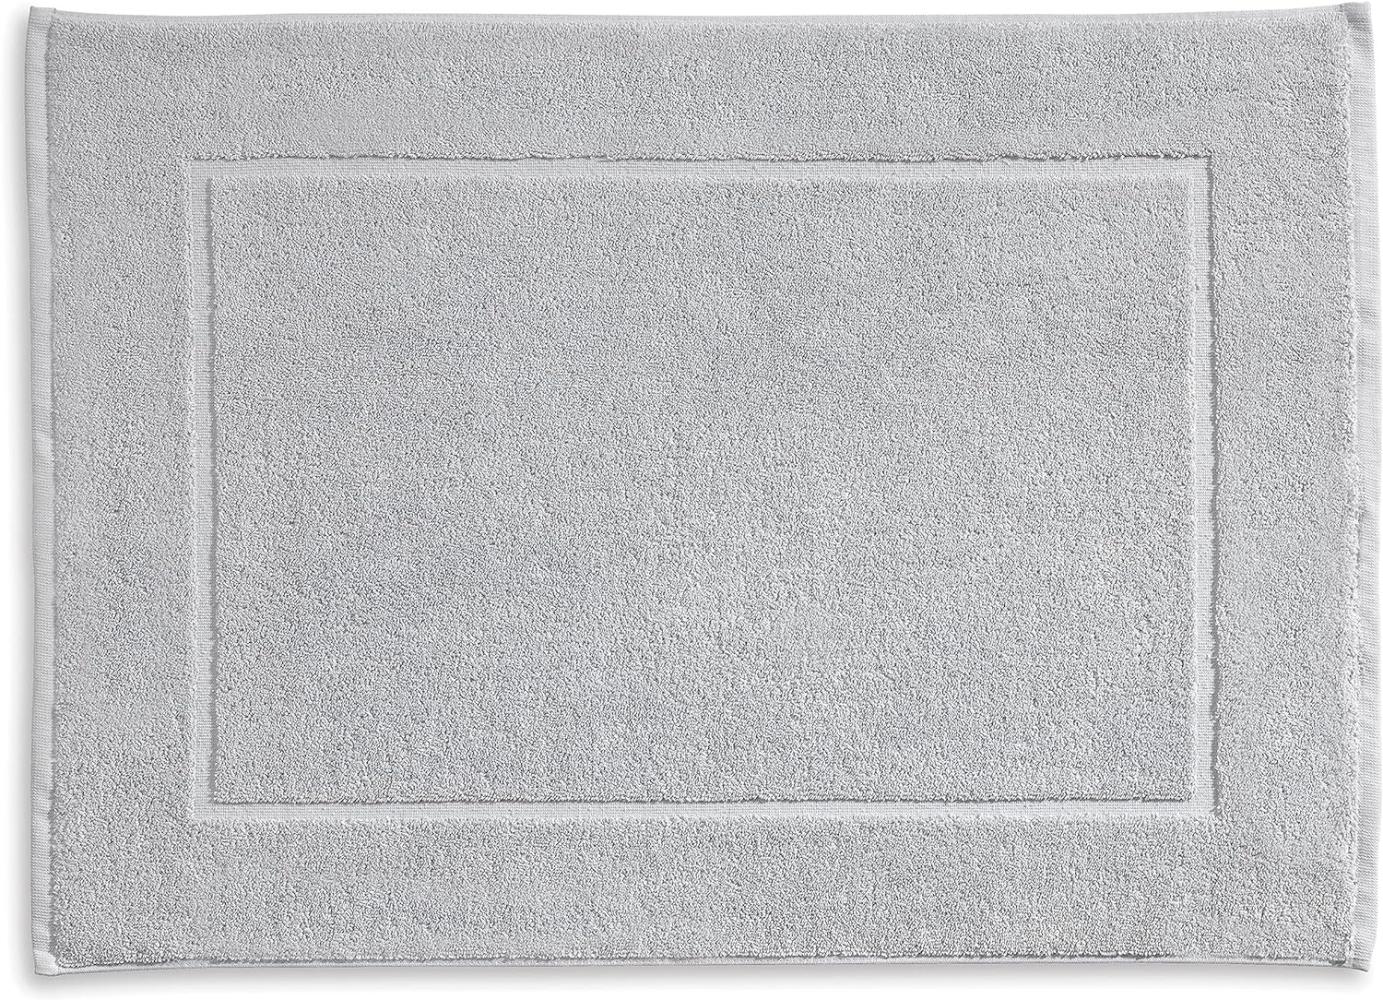 Kela Badvorleger Ladessa, 50 cm x 70 cm, 100% Baumwolle, felsgrau, waschbar bei 60° C, für Fußbodenheizung geeignet, 23311 Bild 1